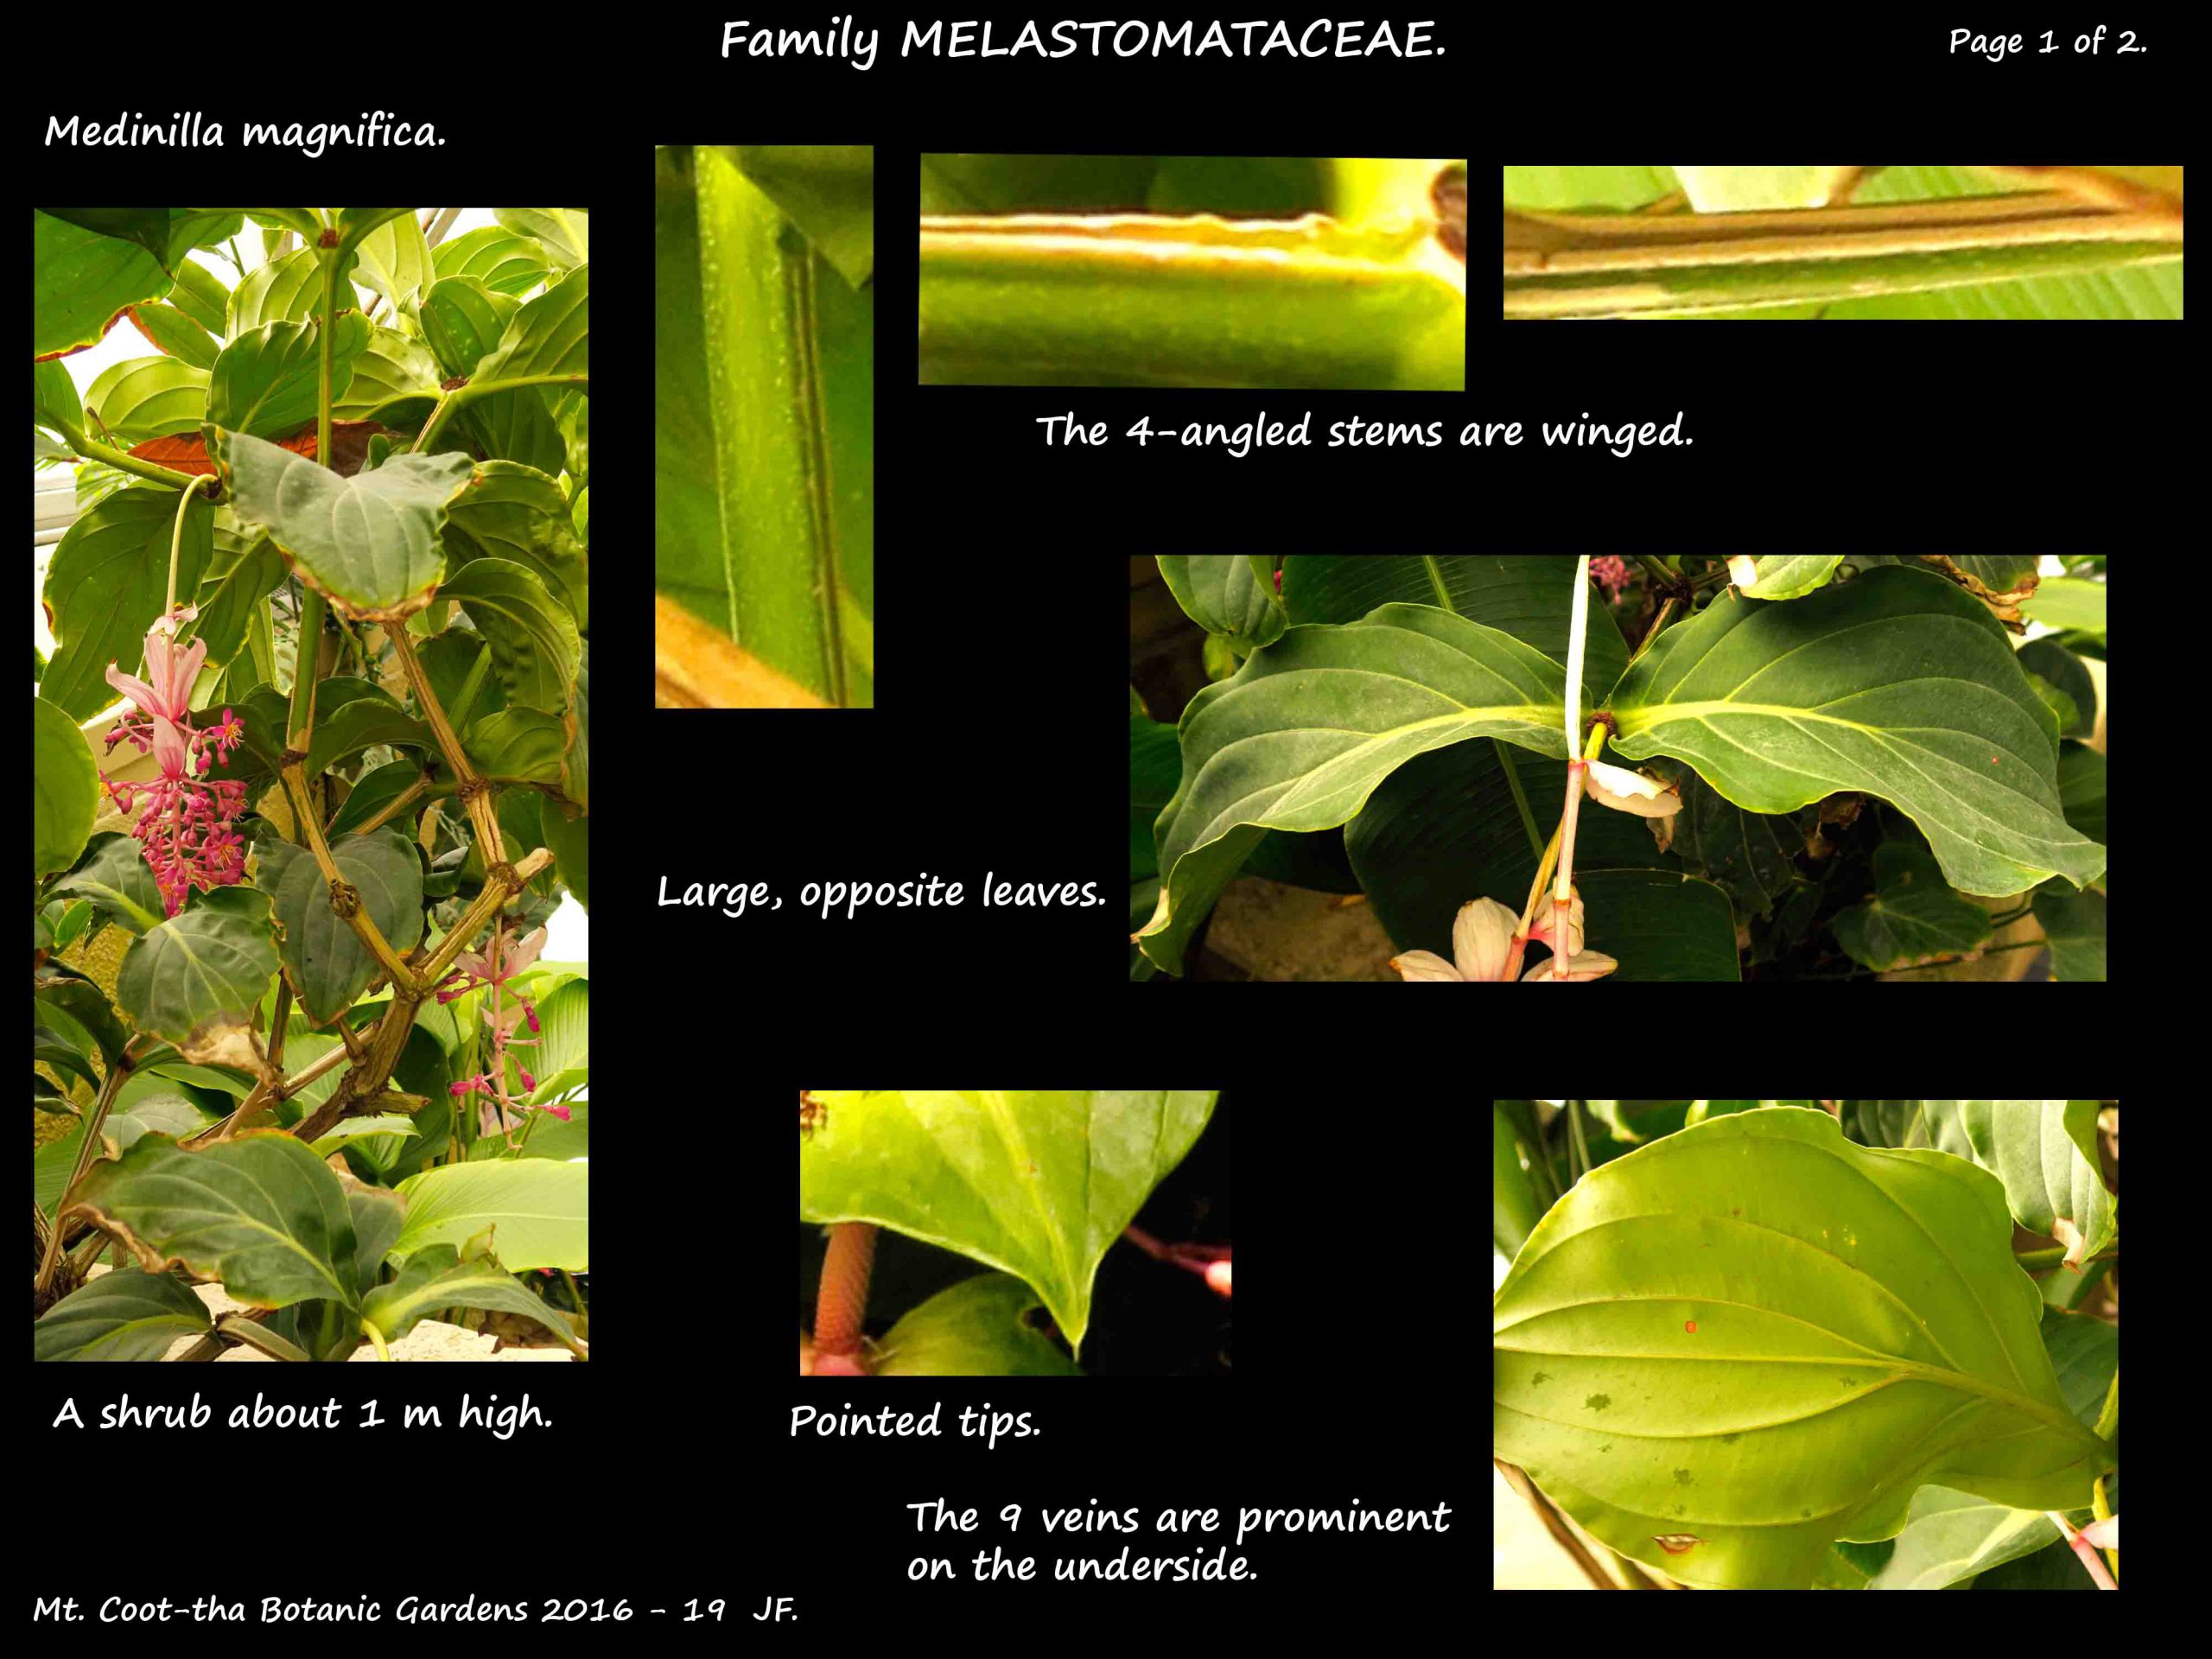 1 Medinilla magnifica leaves